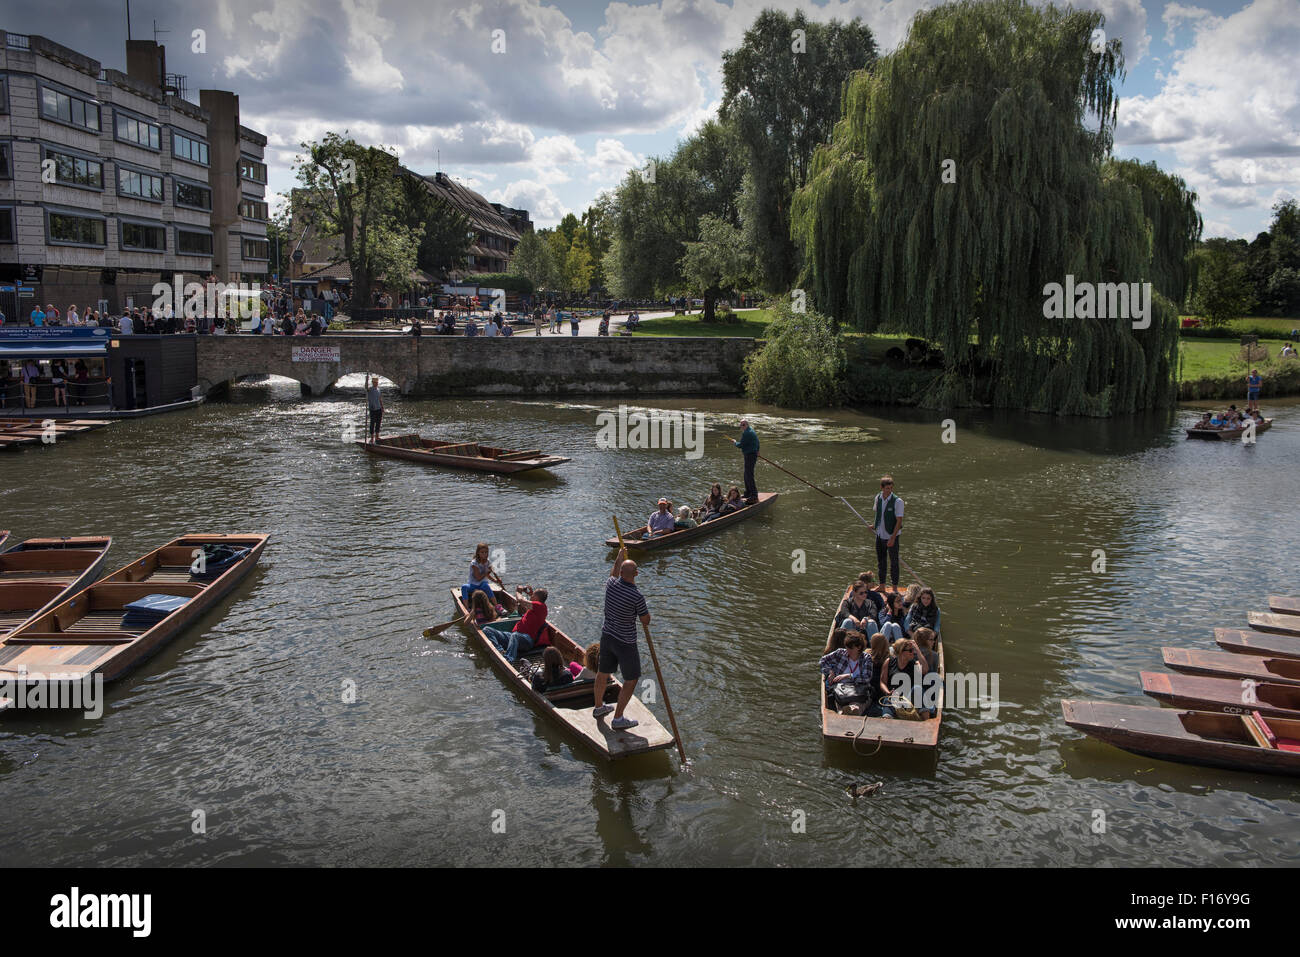 Cambridge, Cambridgeshire, England, UK. Bootfahren auf dem Fluss Cam. 28. August 2015 Stechkahn fahren bei Silver Street auf der Cam Stockfoto